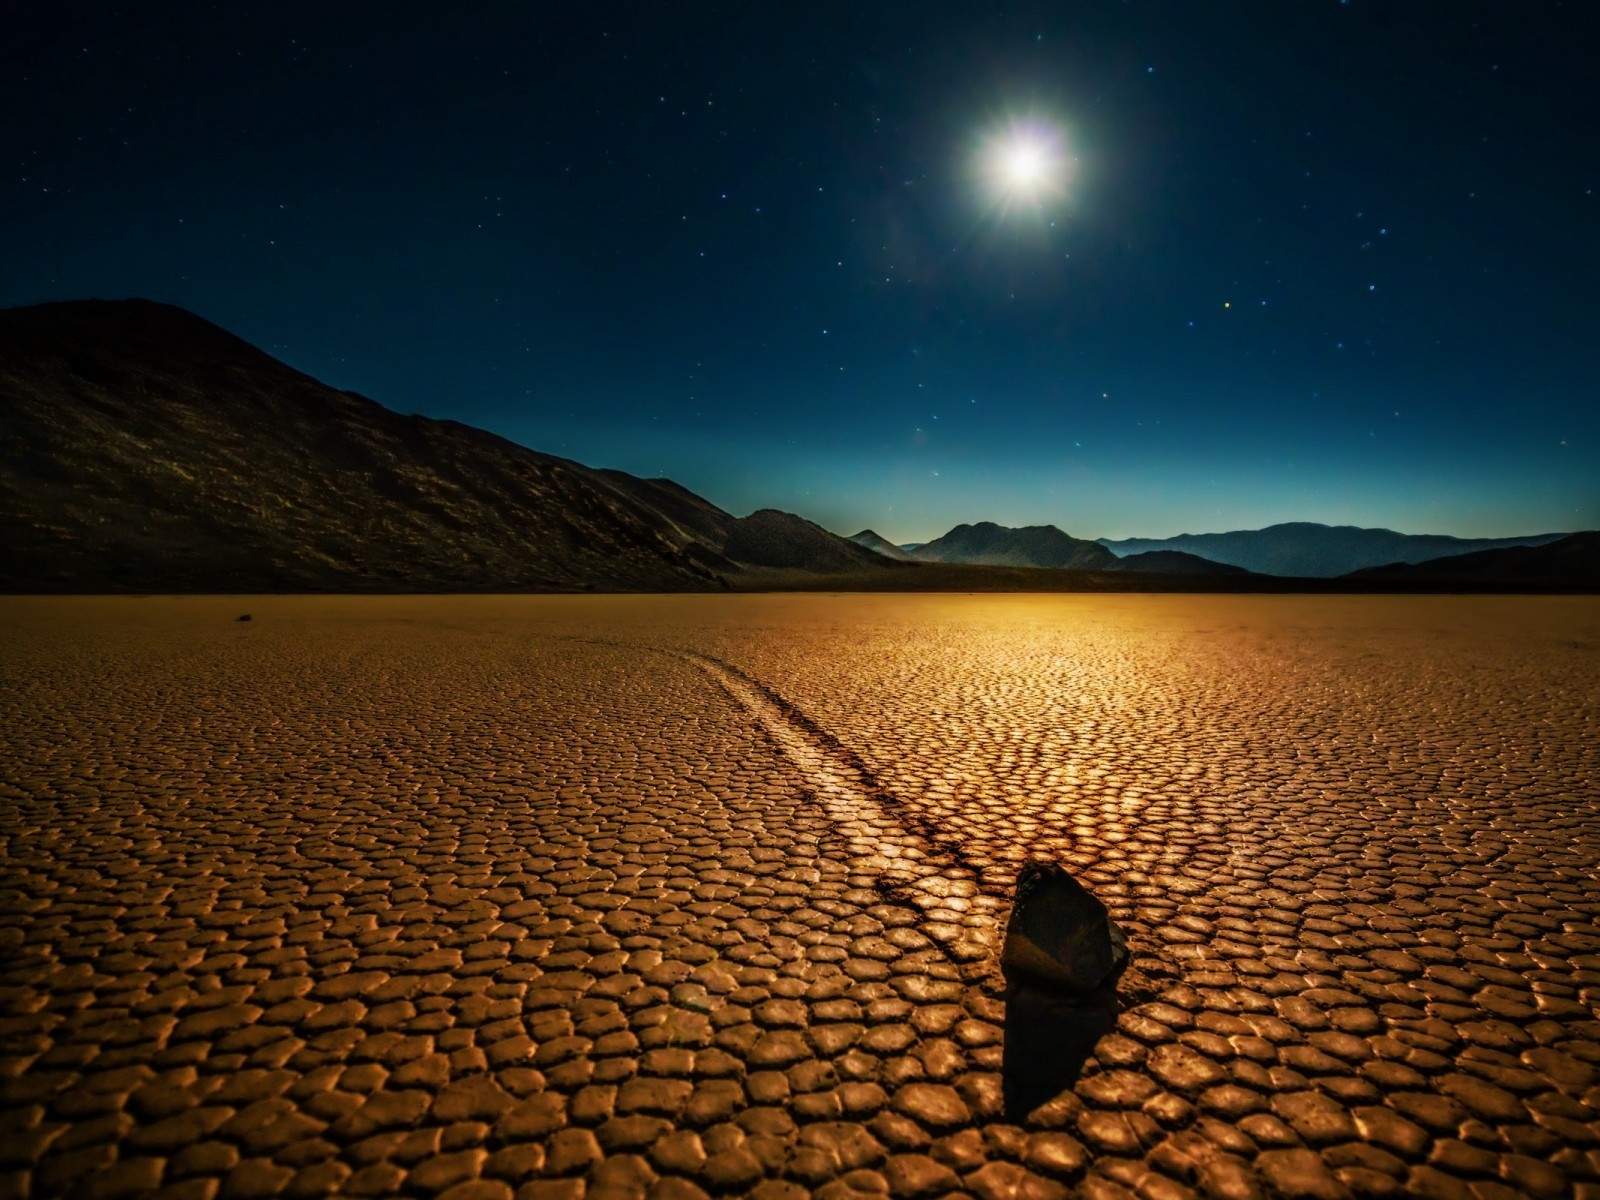 Desert Night Landscape for 1600 x 1200 resolution